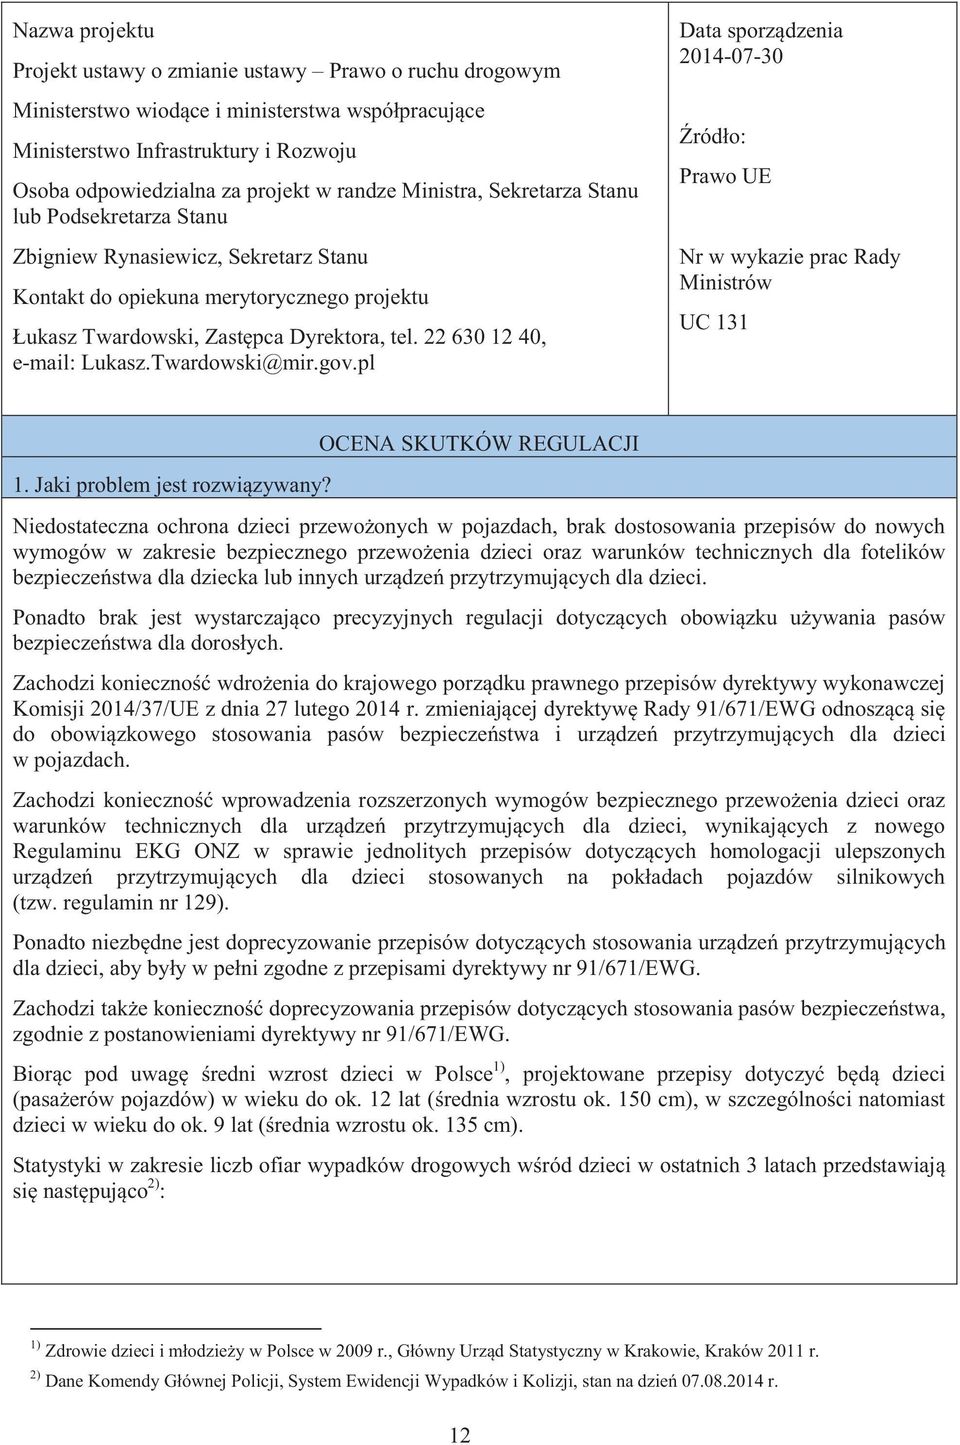 22 630 12 40, e-mail: Lukasz.Twardowski@mir.gov.pl Data sporządzenia 2014-07-30 Źródło: Prawo UE Nr w wykazie prac Rady Ministrów UC 131 1. Jaki problem jest rozwiązywany?